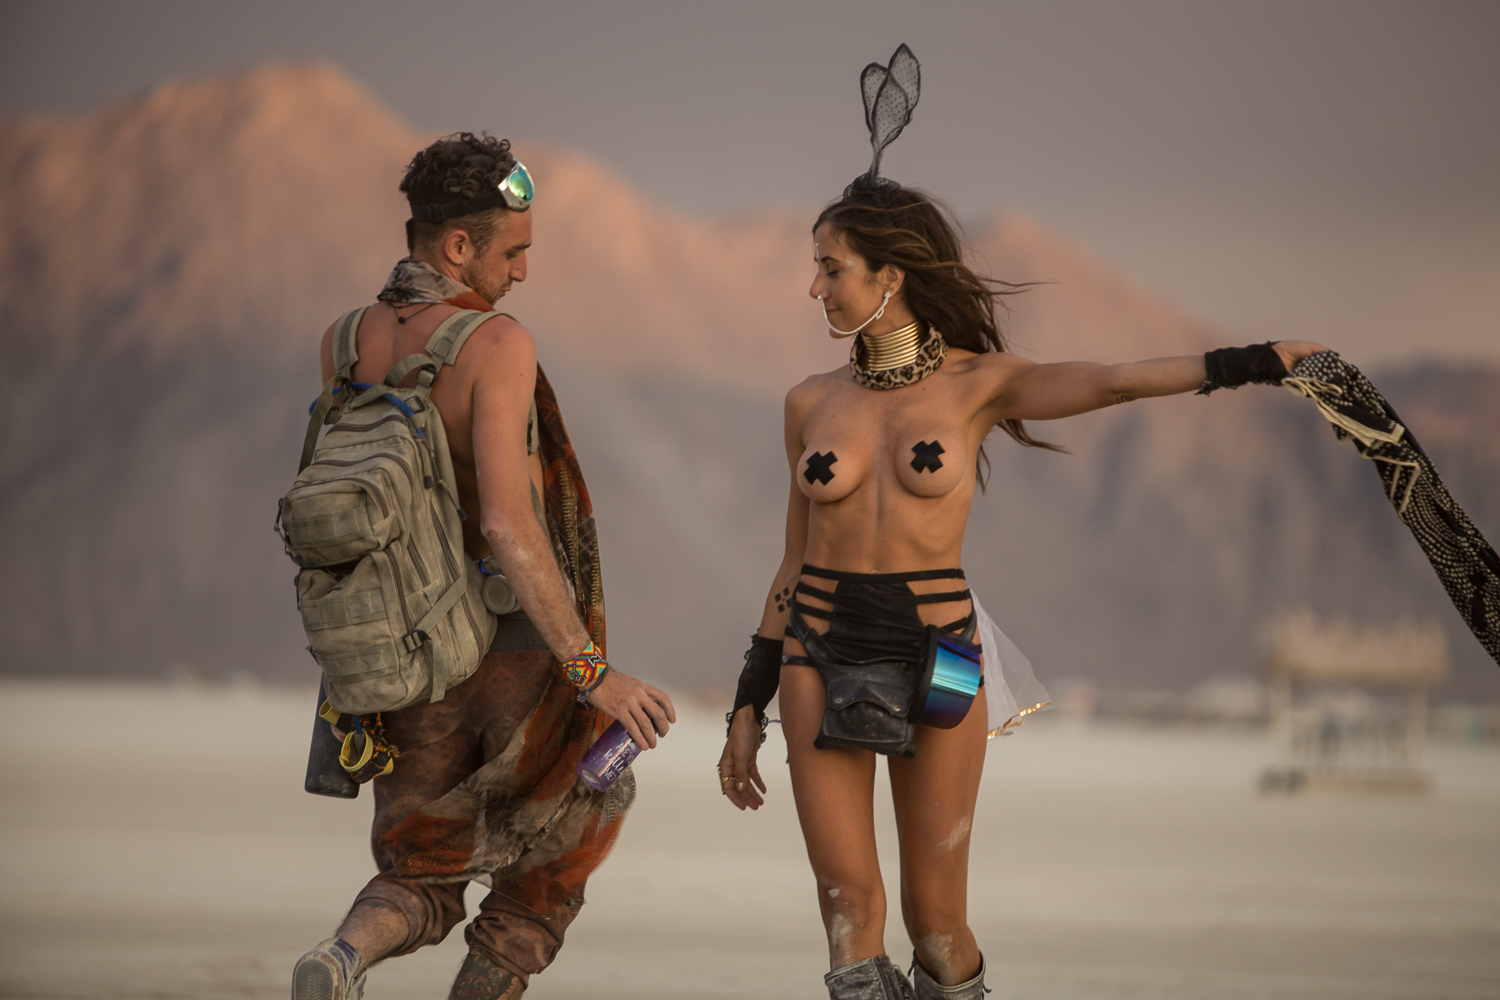 Burning Man Photos 2017, Matan Tzinamon, XIMT